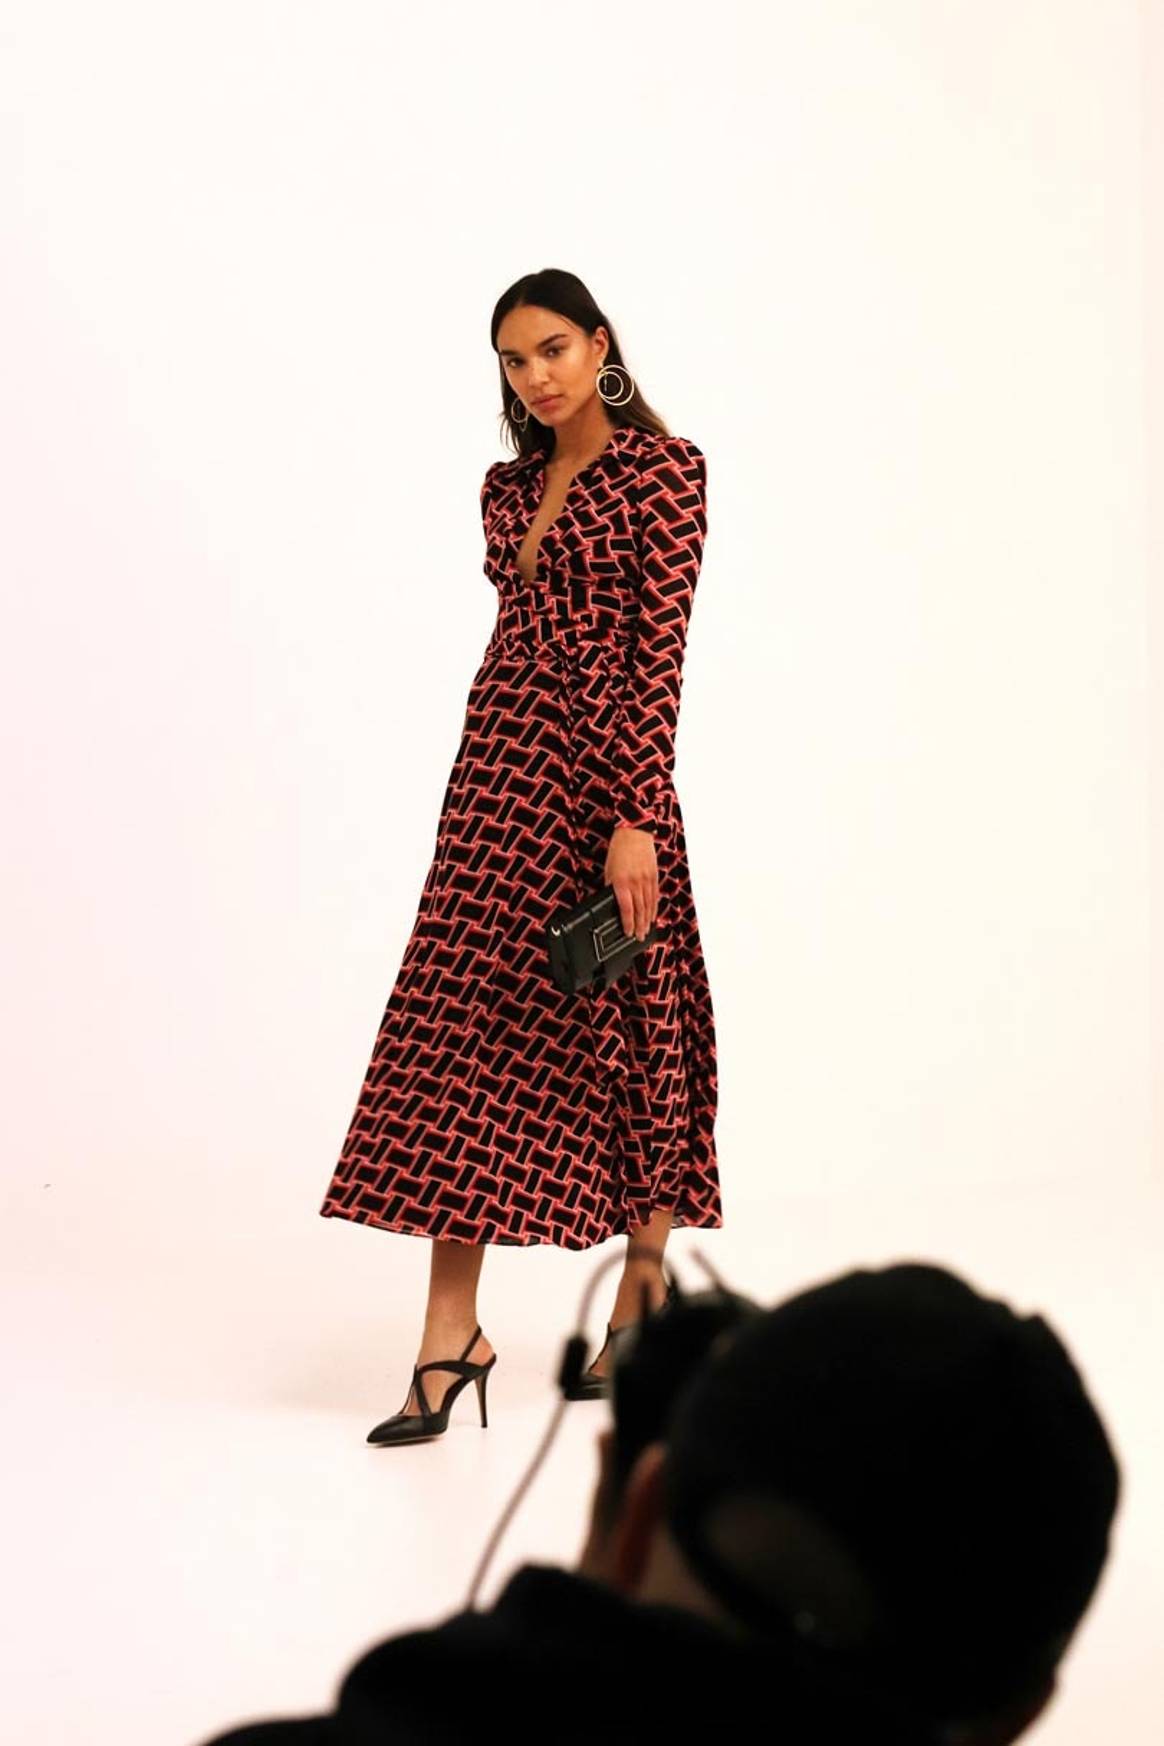 Inklusiver und inspirierender: So will Zalando seine Womenswear aufstellen